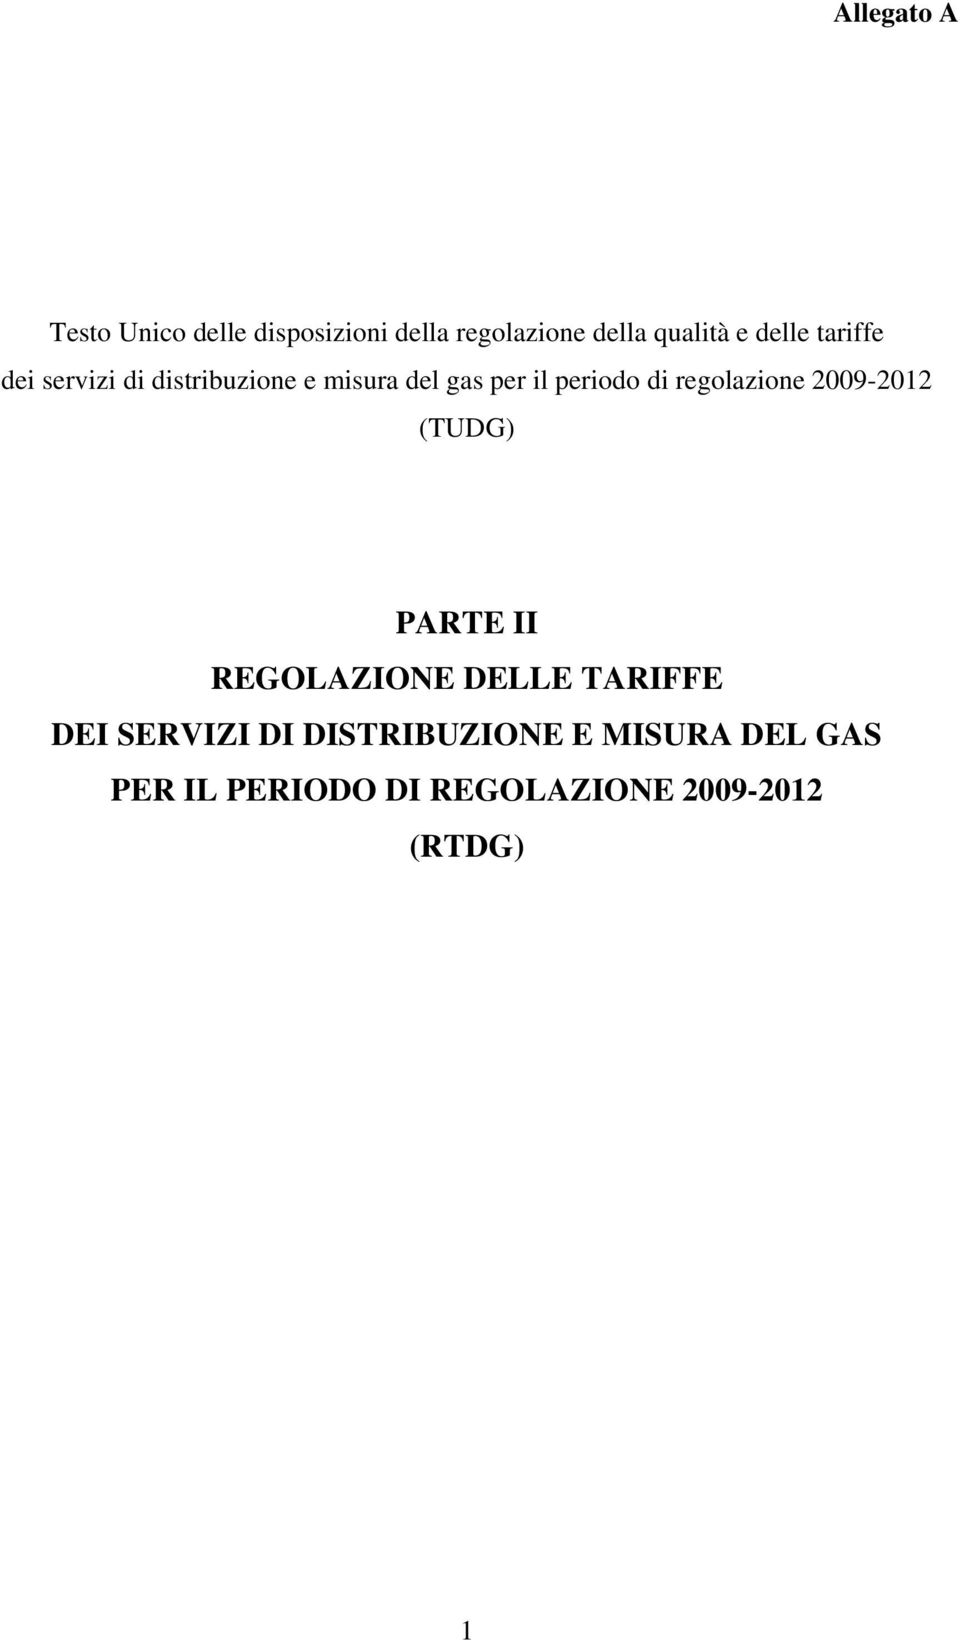 2009-2012 (TUDG) PARTE II REGOLAZIONE DELLE TARIFFE DEI SERVIZI DI